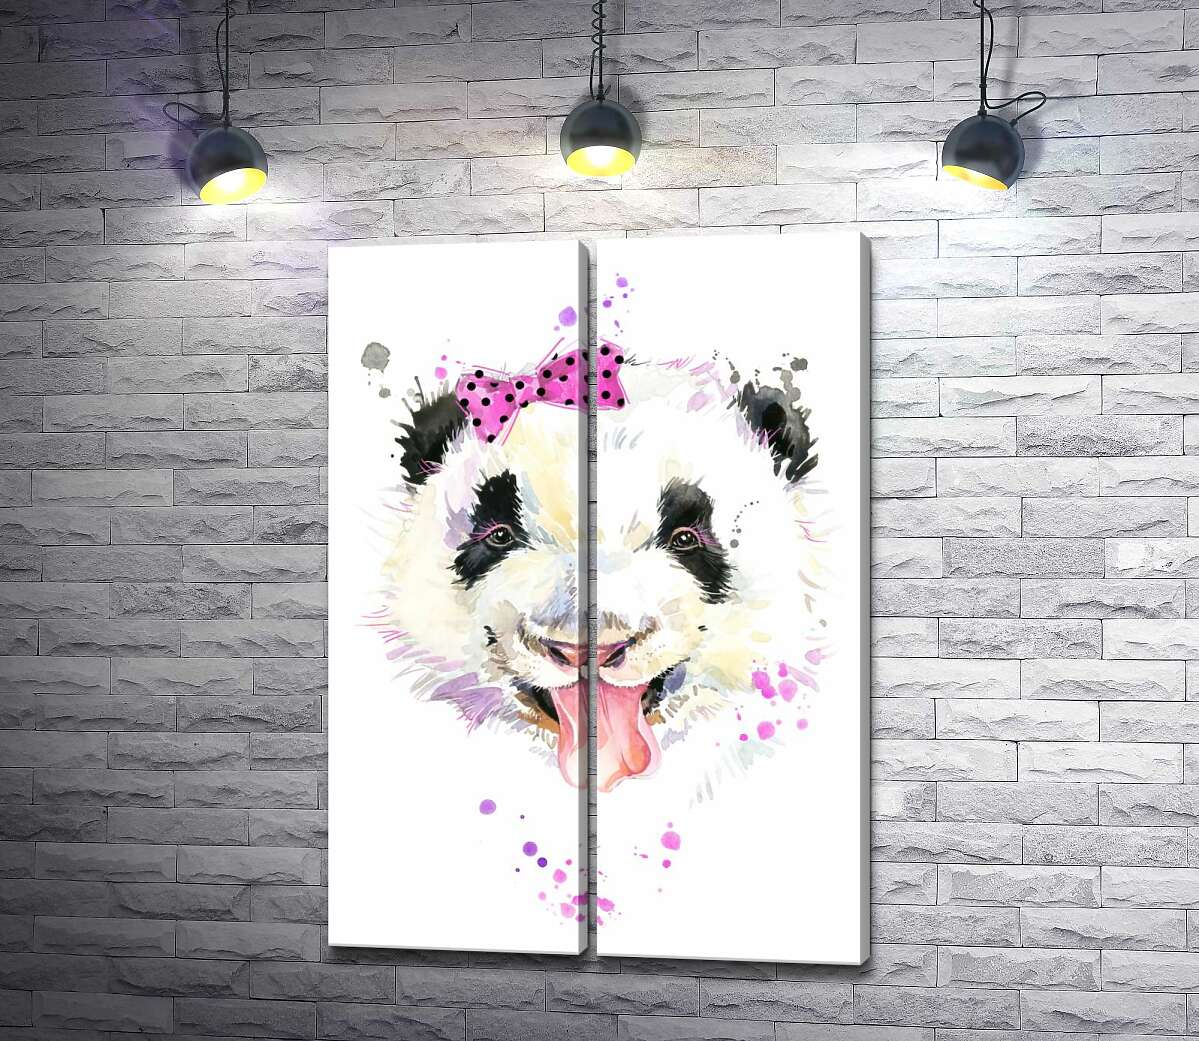 модульная картина Панда с розовым бантиком показывает язык